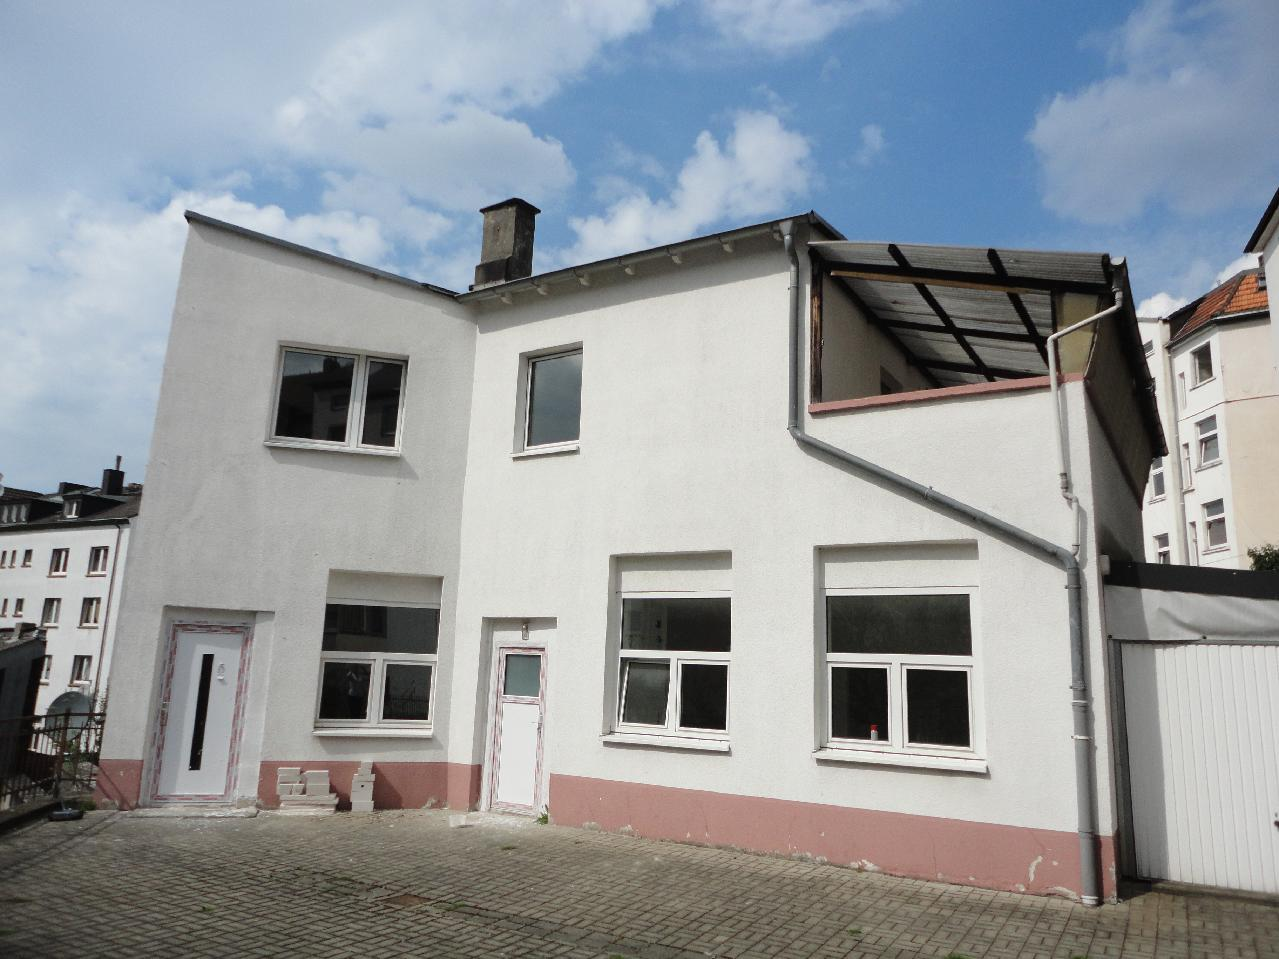 150 qm Hinterhaus ideal für eine Großfamilie oder als Mehrgenerationshaus Renovierungen erforderlich Ihr Ansprechpartner CASA Immobilien Dienstleistungs GmbH Bandstahlstr.